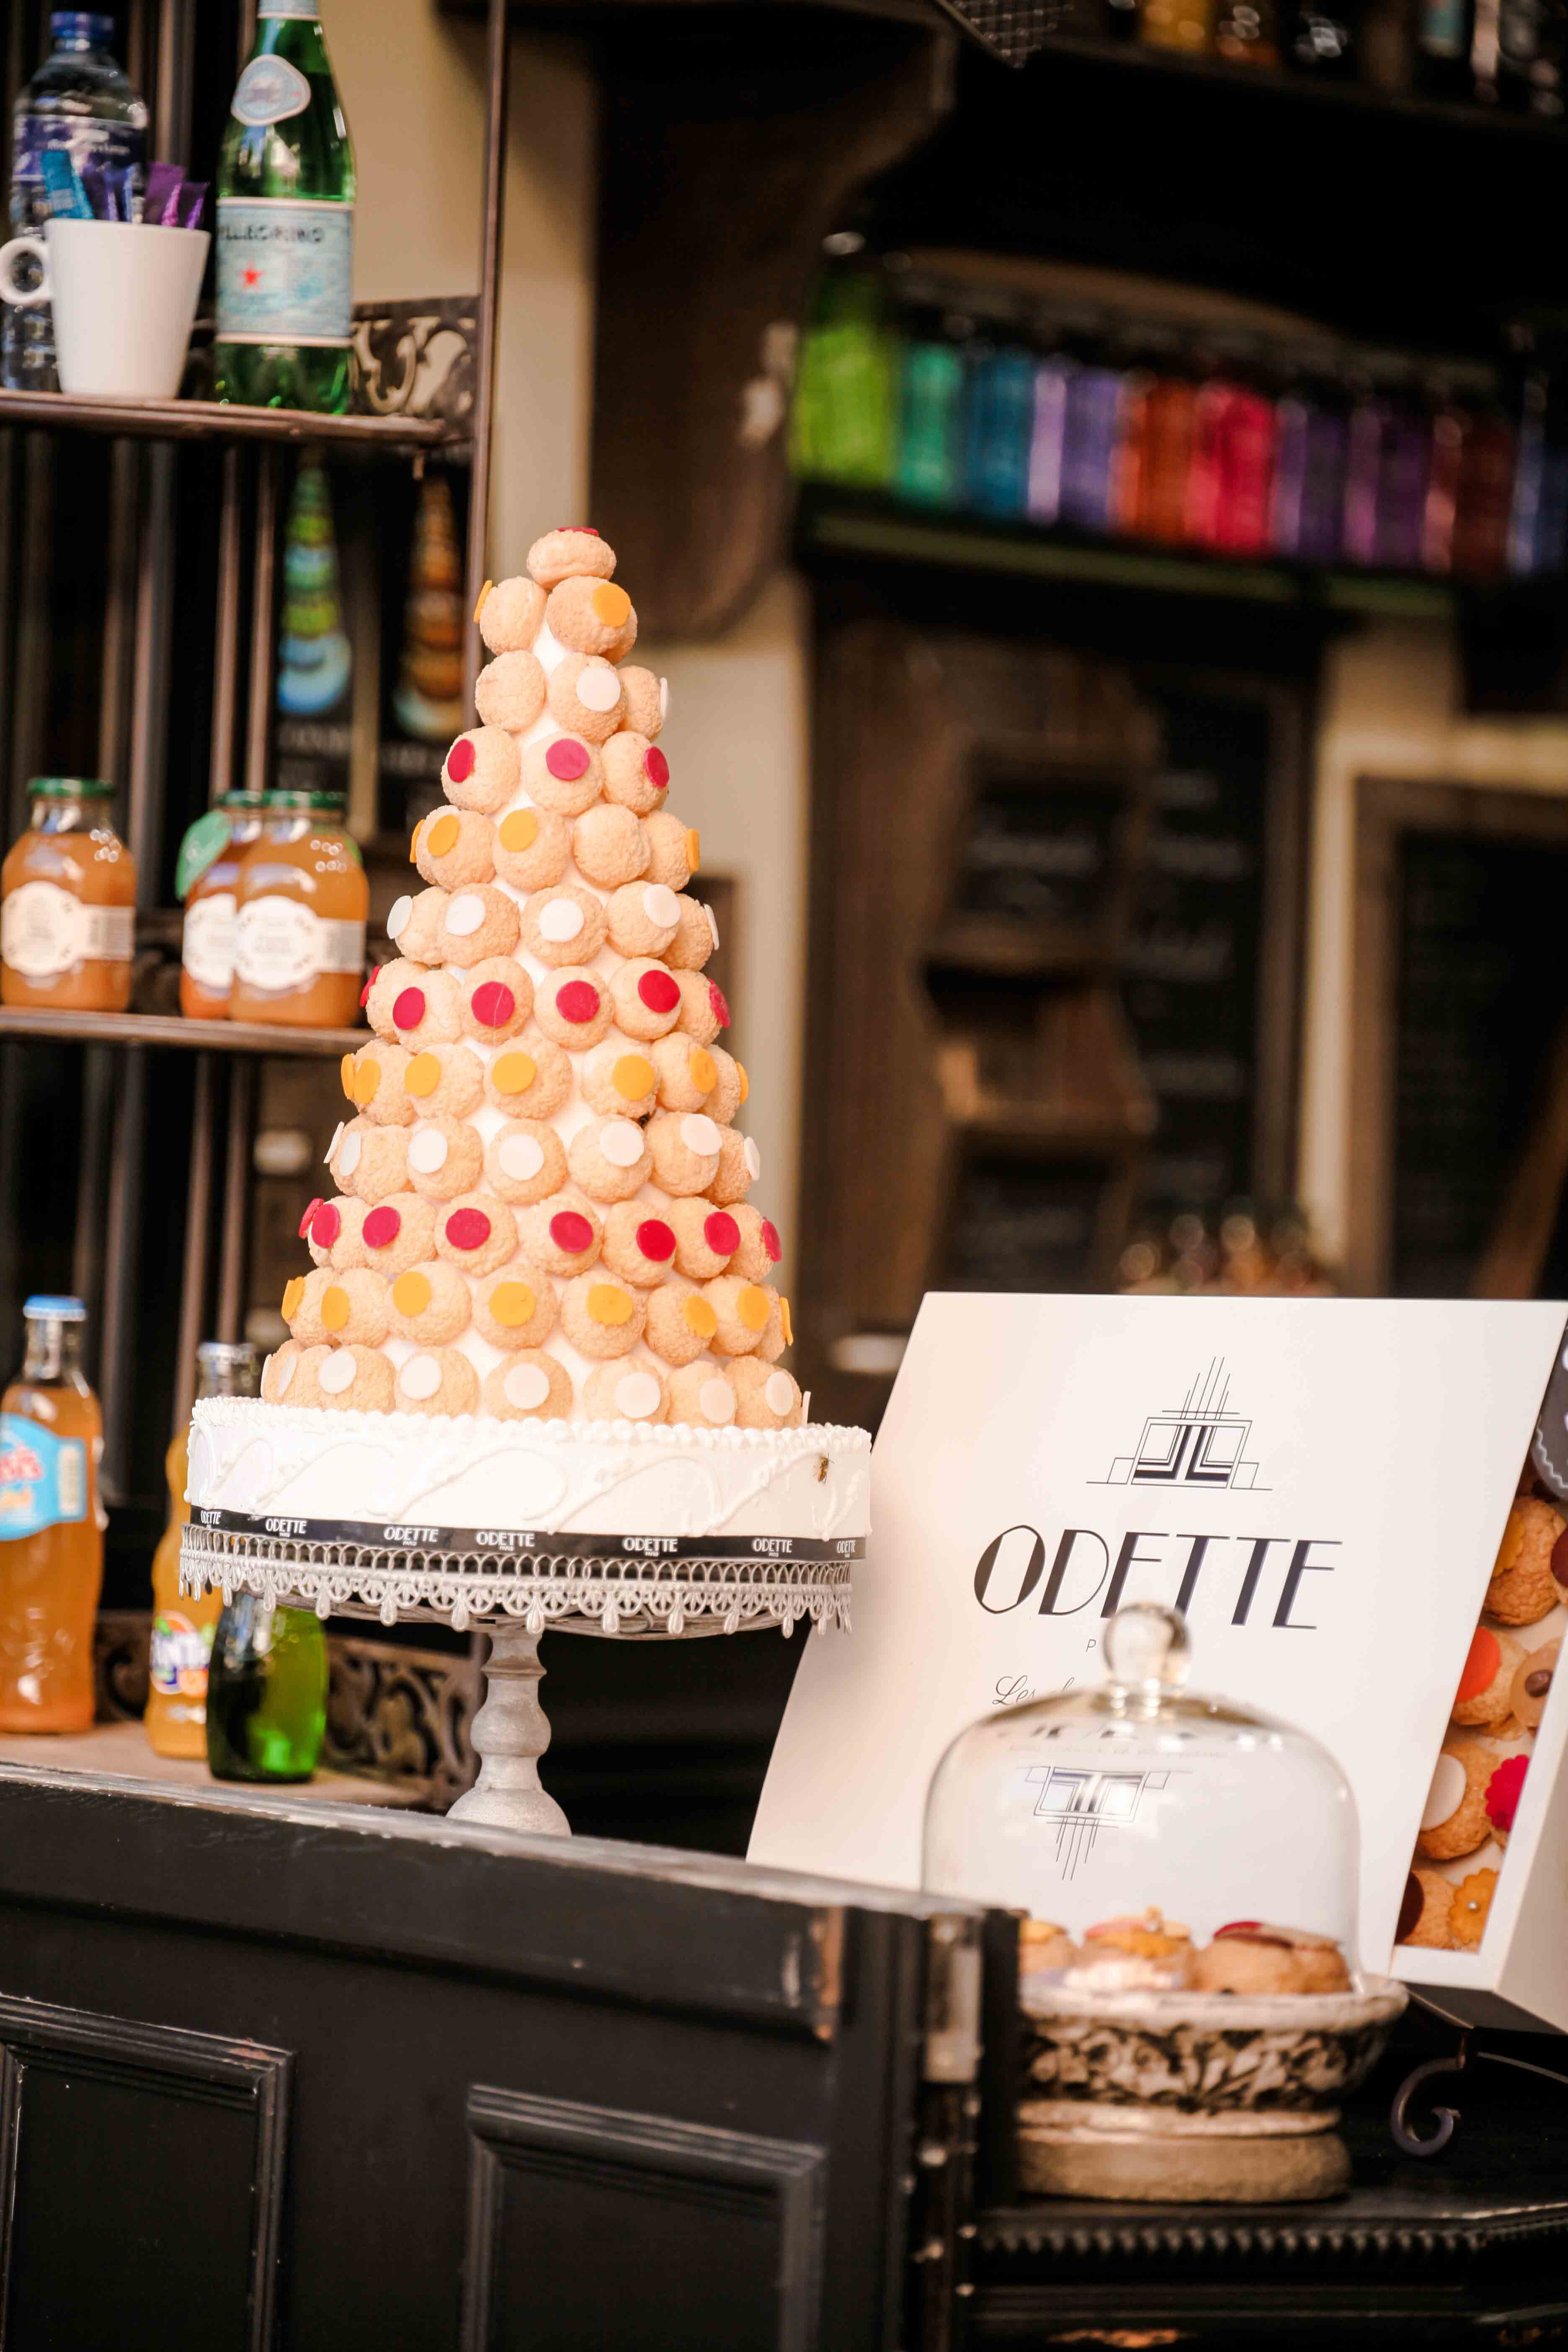 Odette : The best “Choux à la crème” of Paris